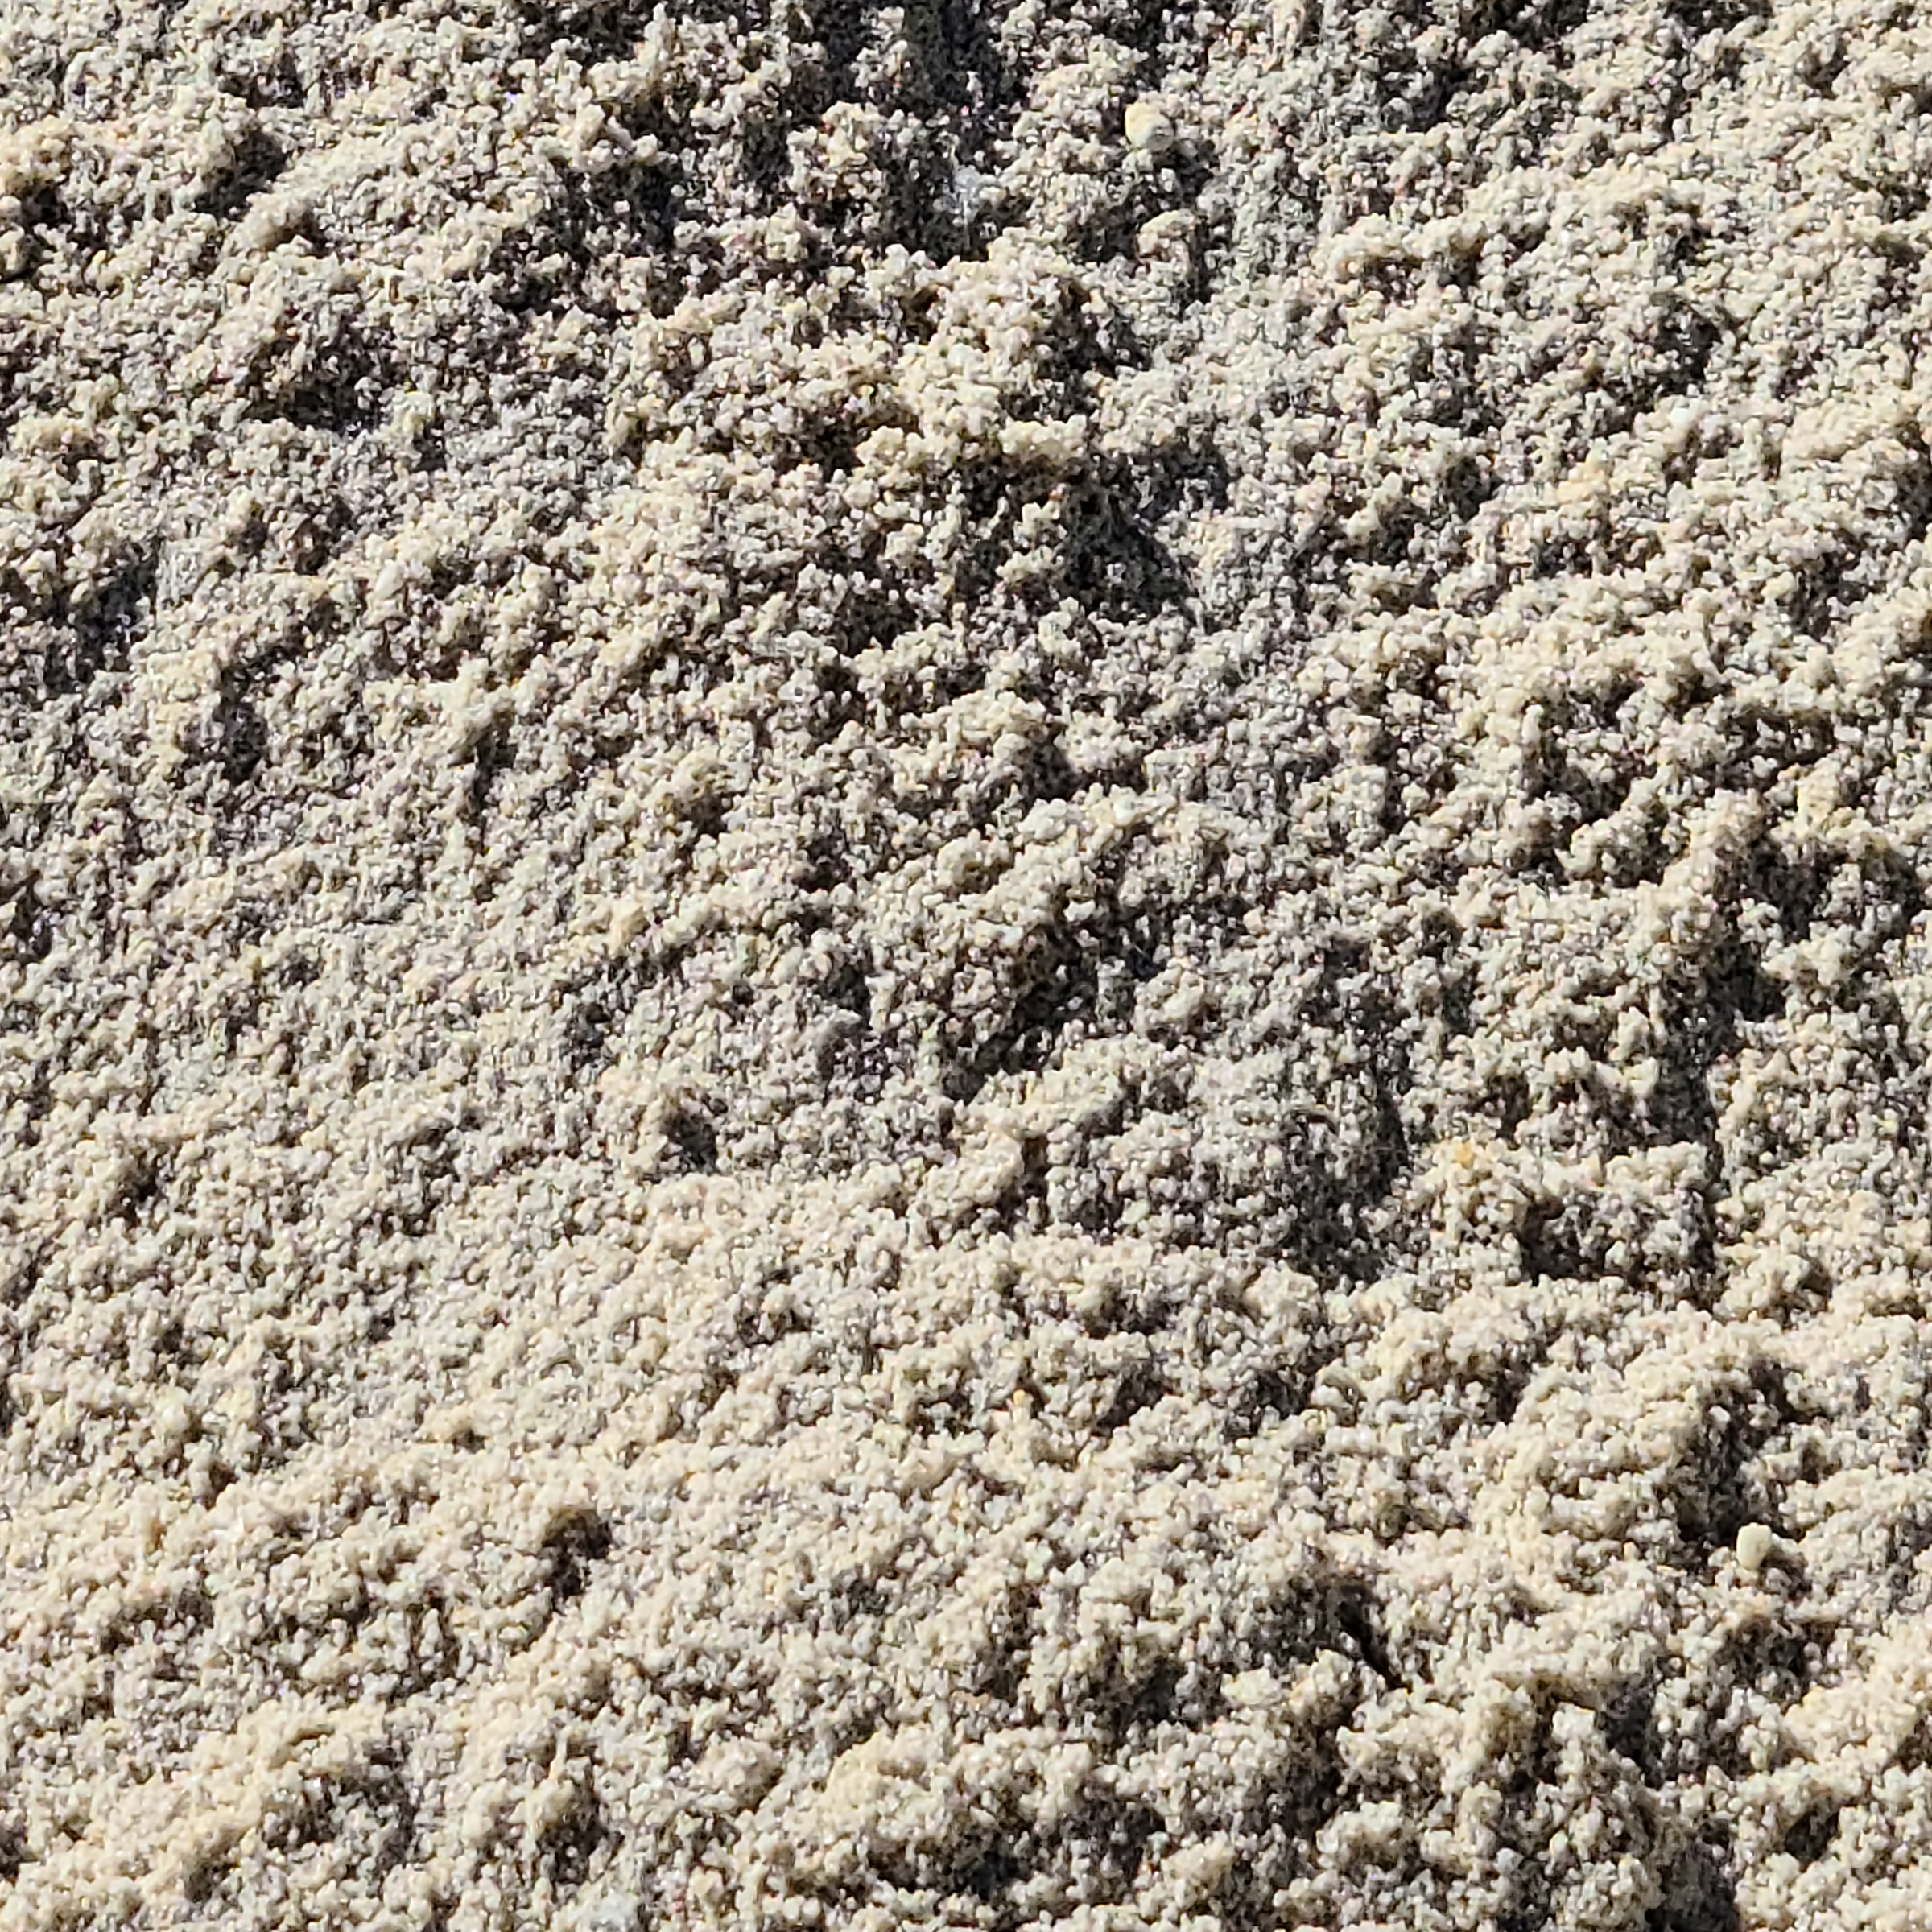 Sand in Delaware